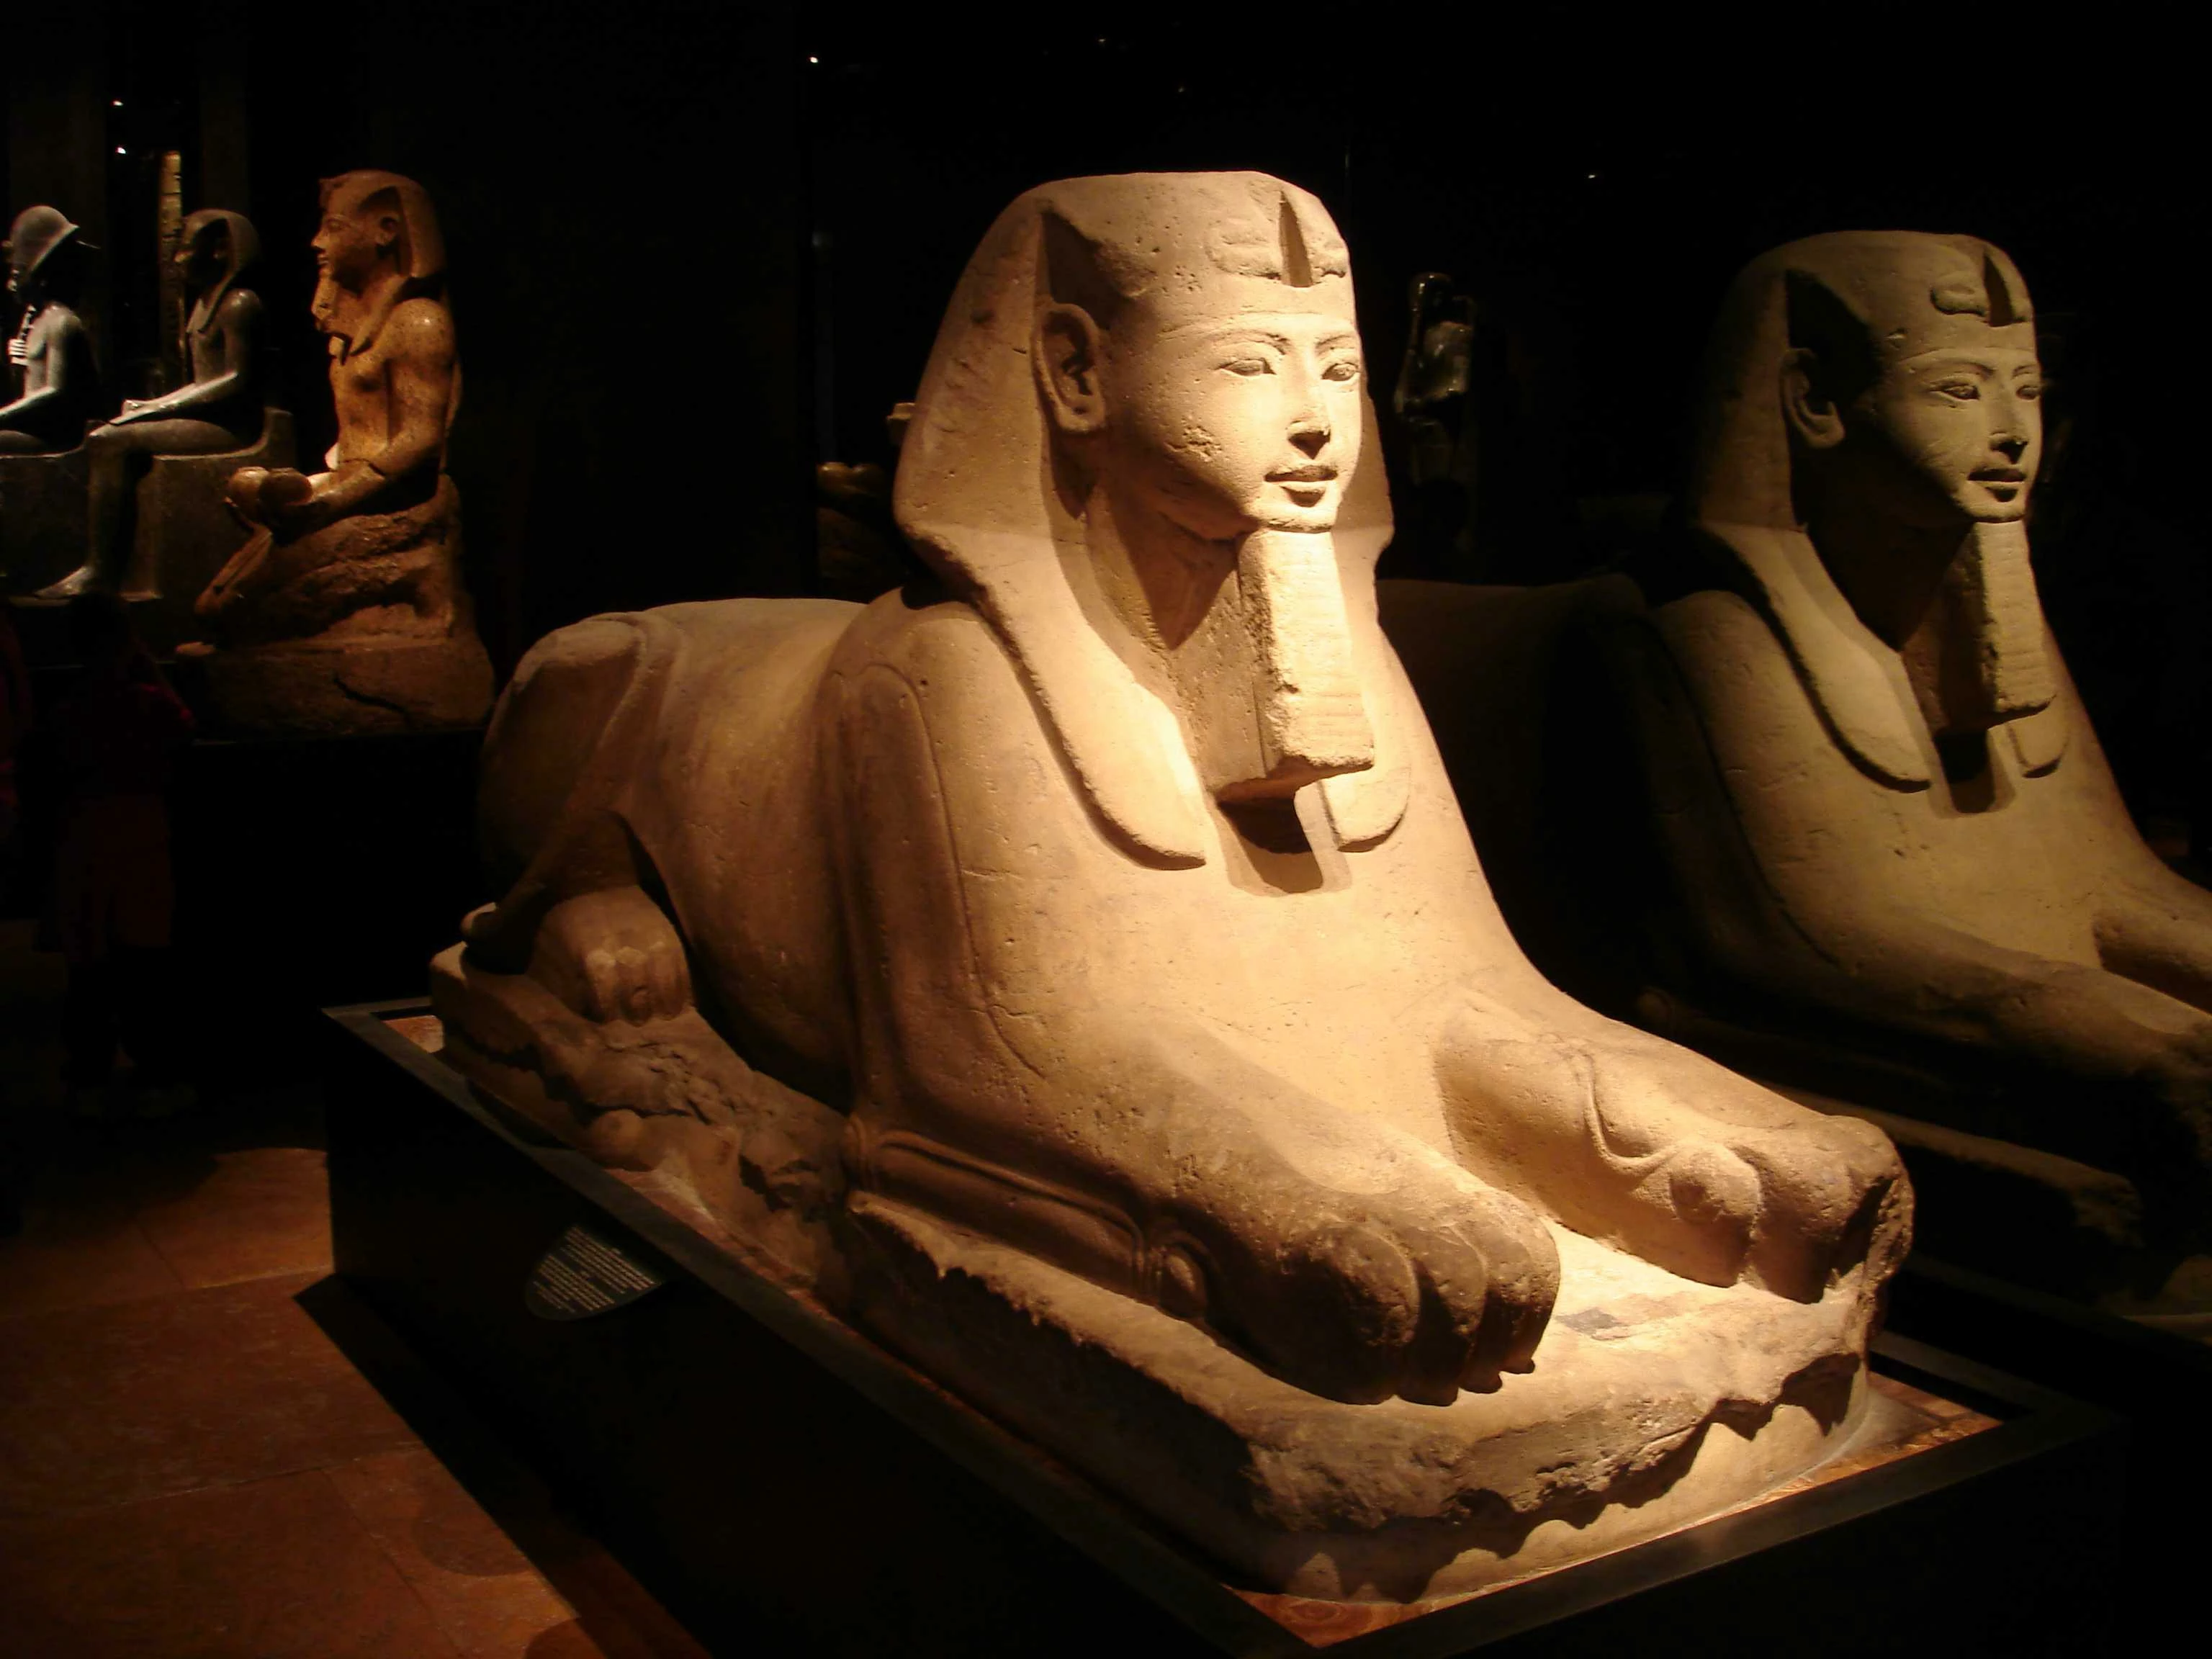 Fondazione Museo delle Antichità Egizie di Torino, Italy